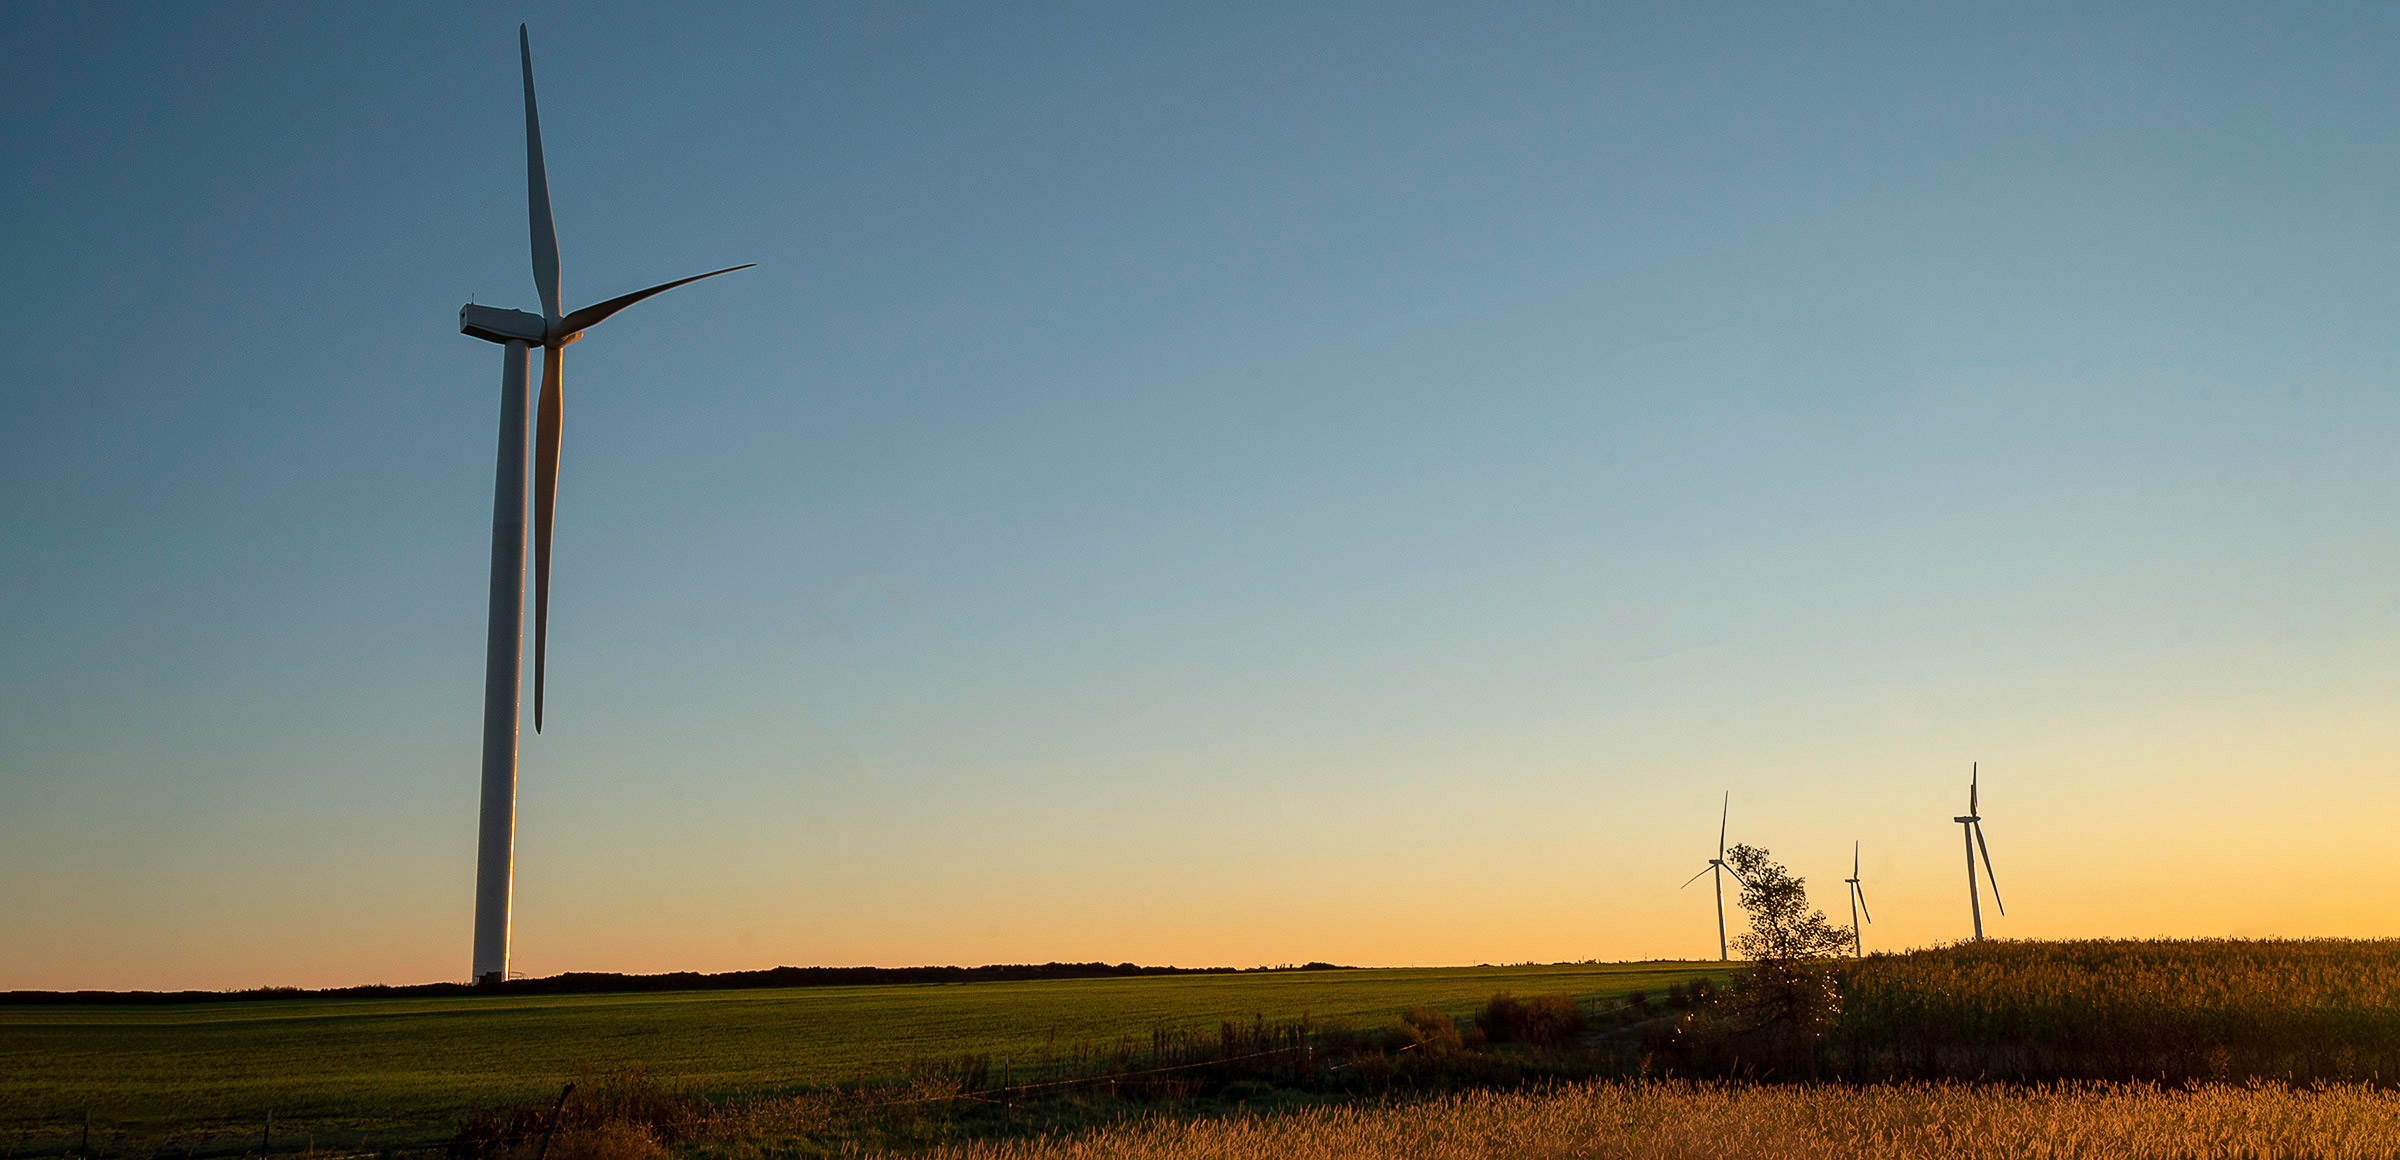 Benefits of wind energy